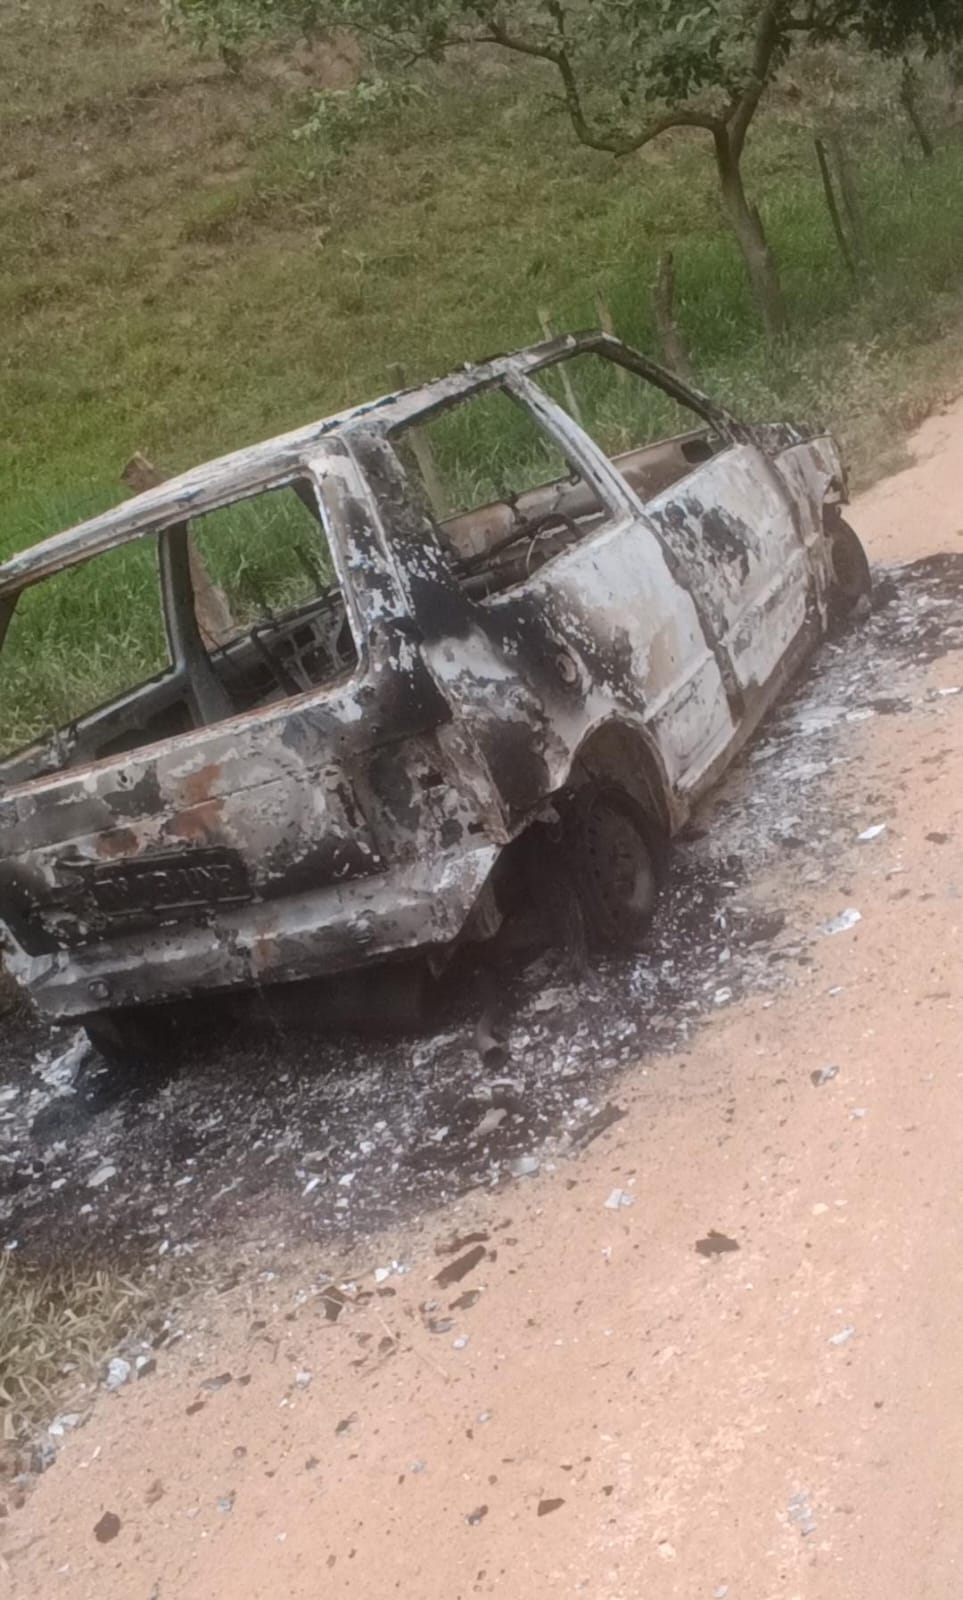 Mulher quebra bar e atea fogo em carro de homem na zona rural de Ladainha